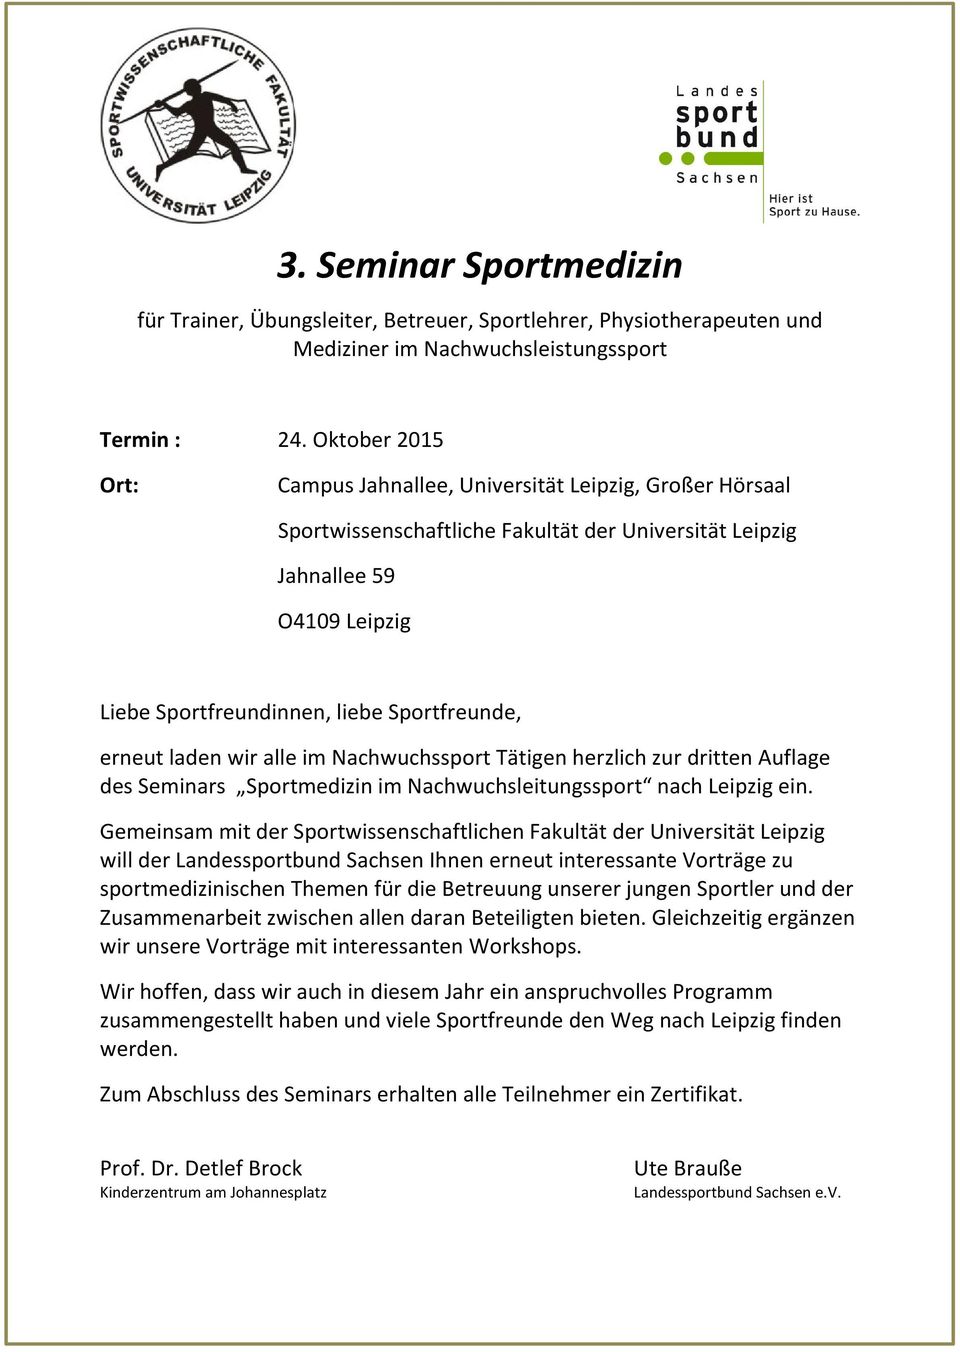 erneut laden wir alle im Nachwuchssport Tätigen herzlich zur dritten Auflage des Seminars Sportmedizin im Nachwuchsleitungssport nach Leipzig ein.